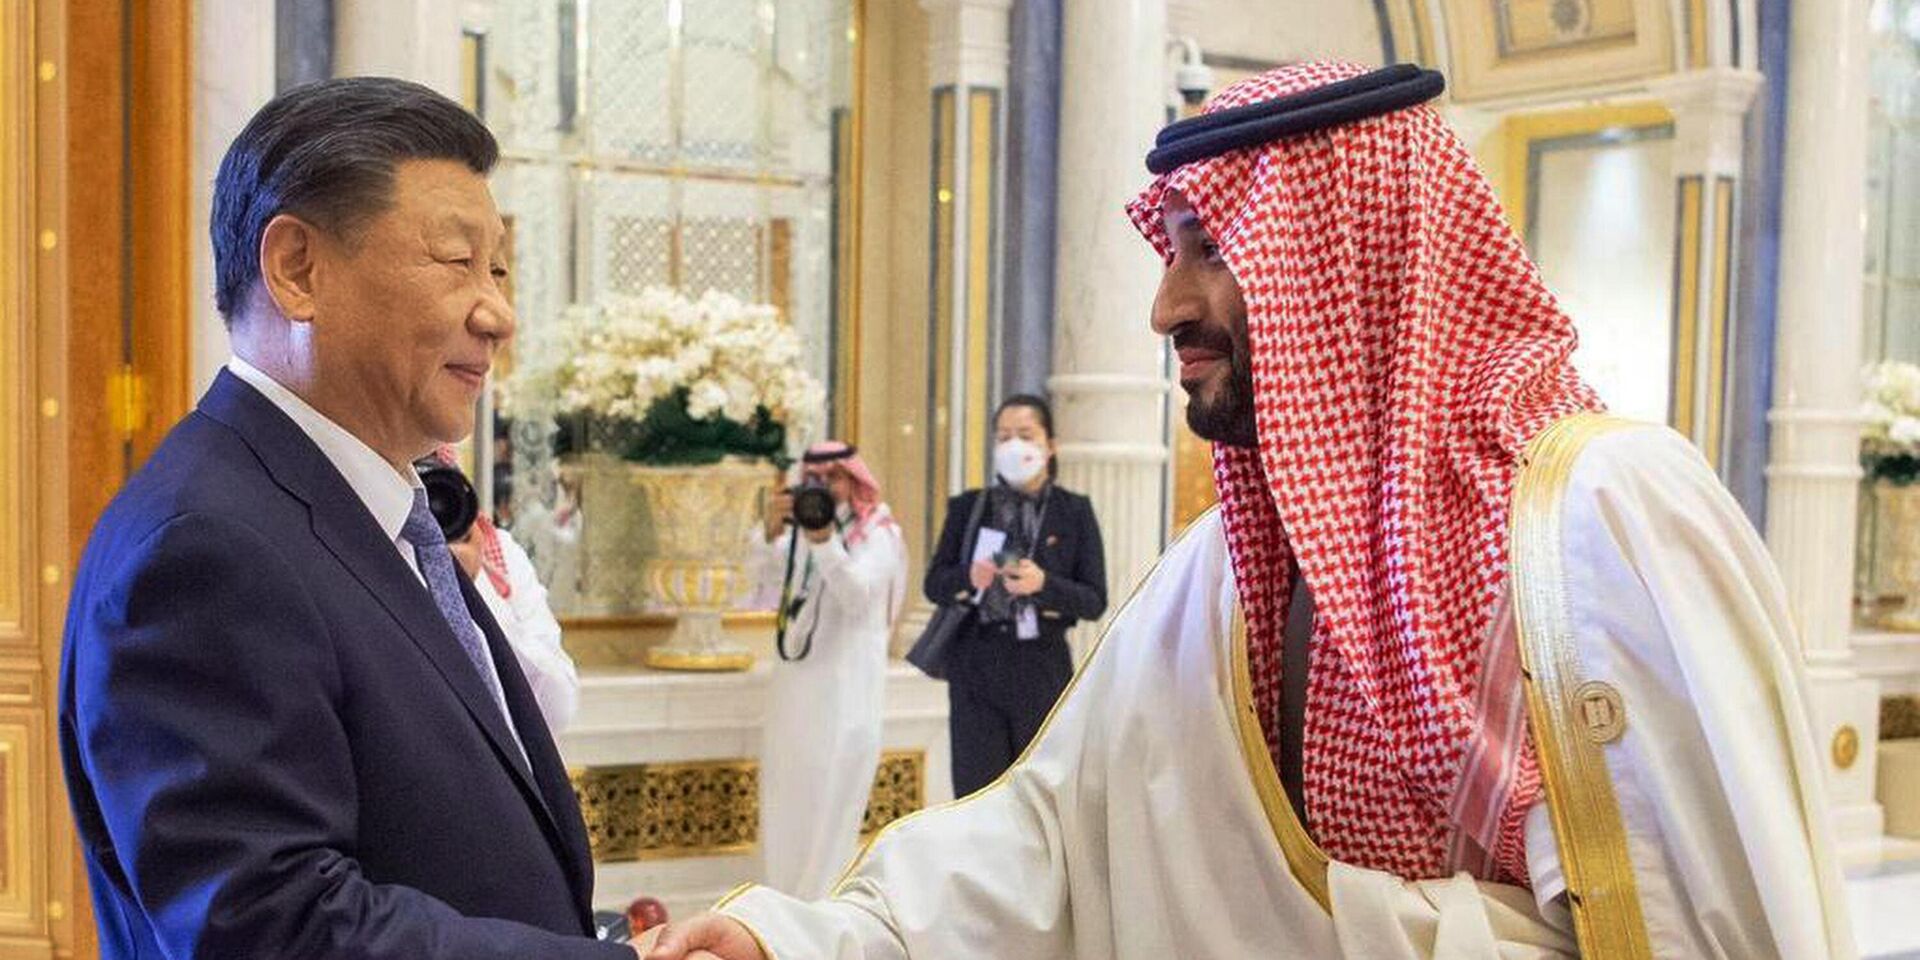 Председатель КНР Си Цзиньпин и наследный принц Саудовской Аравии Мухаммед бен Салман во время встречи в Эр-Рияде. 9 декабря 2022 года - ИноСМИ, 1920, 14.03.2023